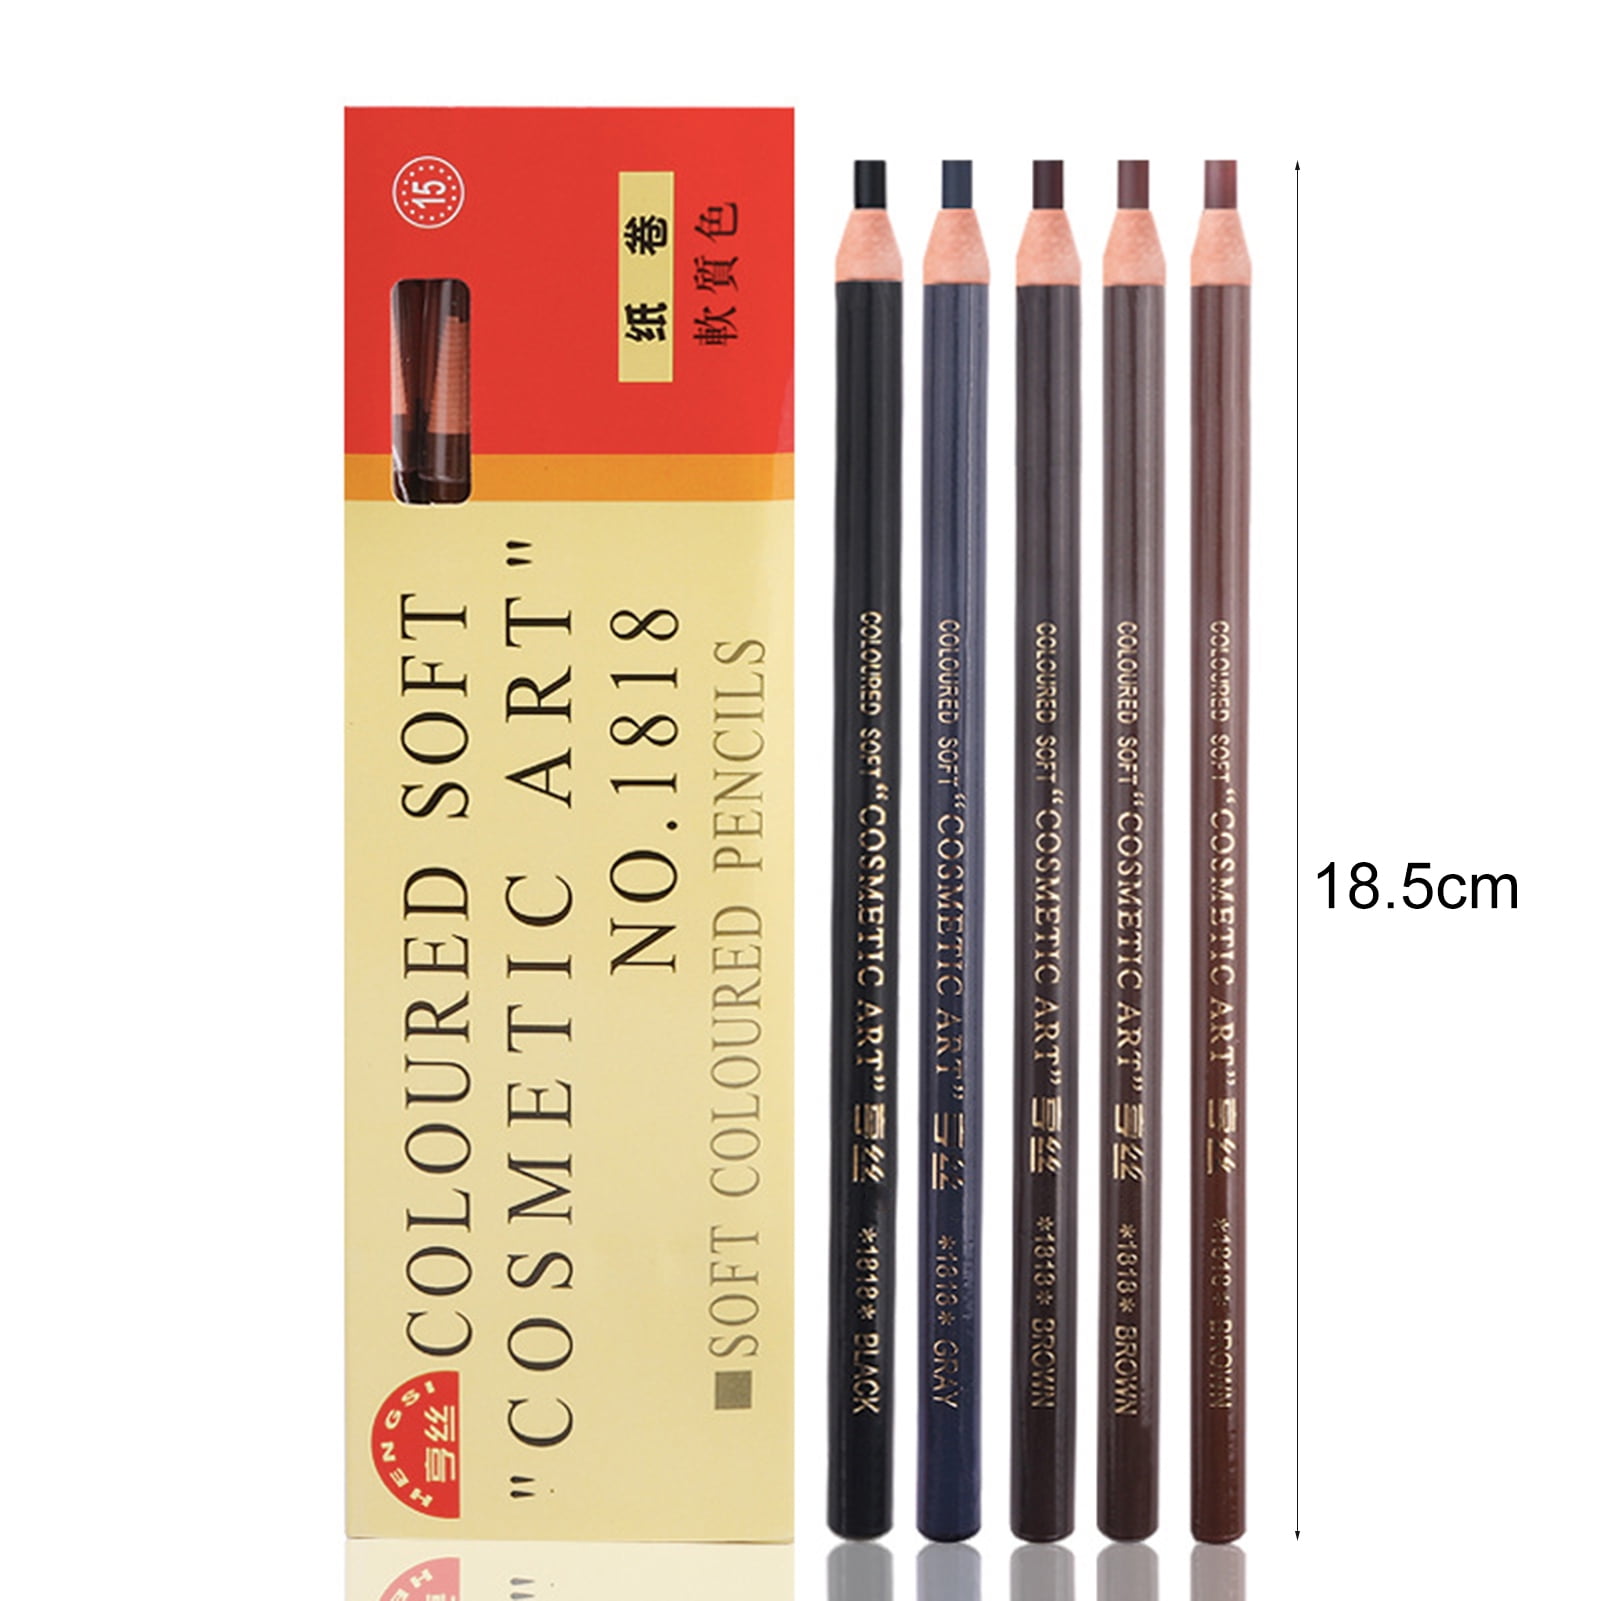 Soft coloured pencils no.1818